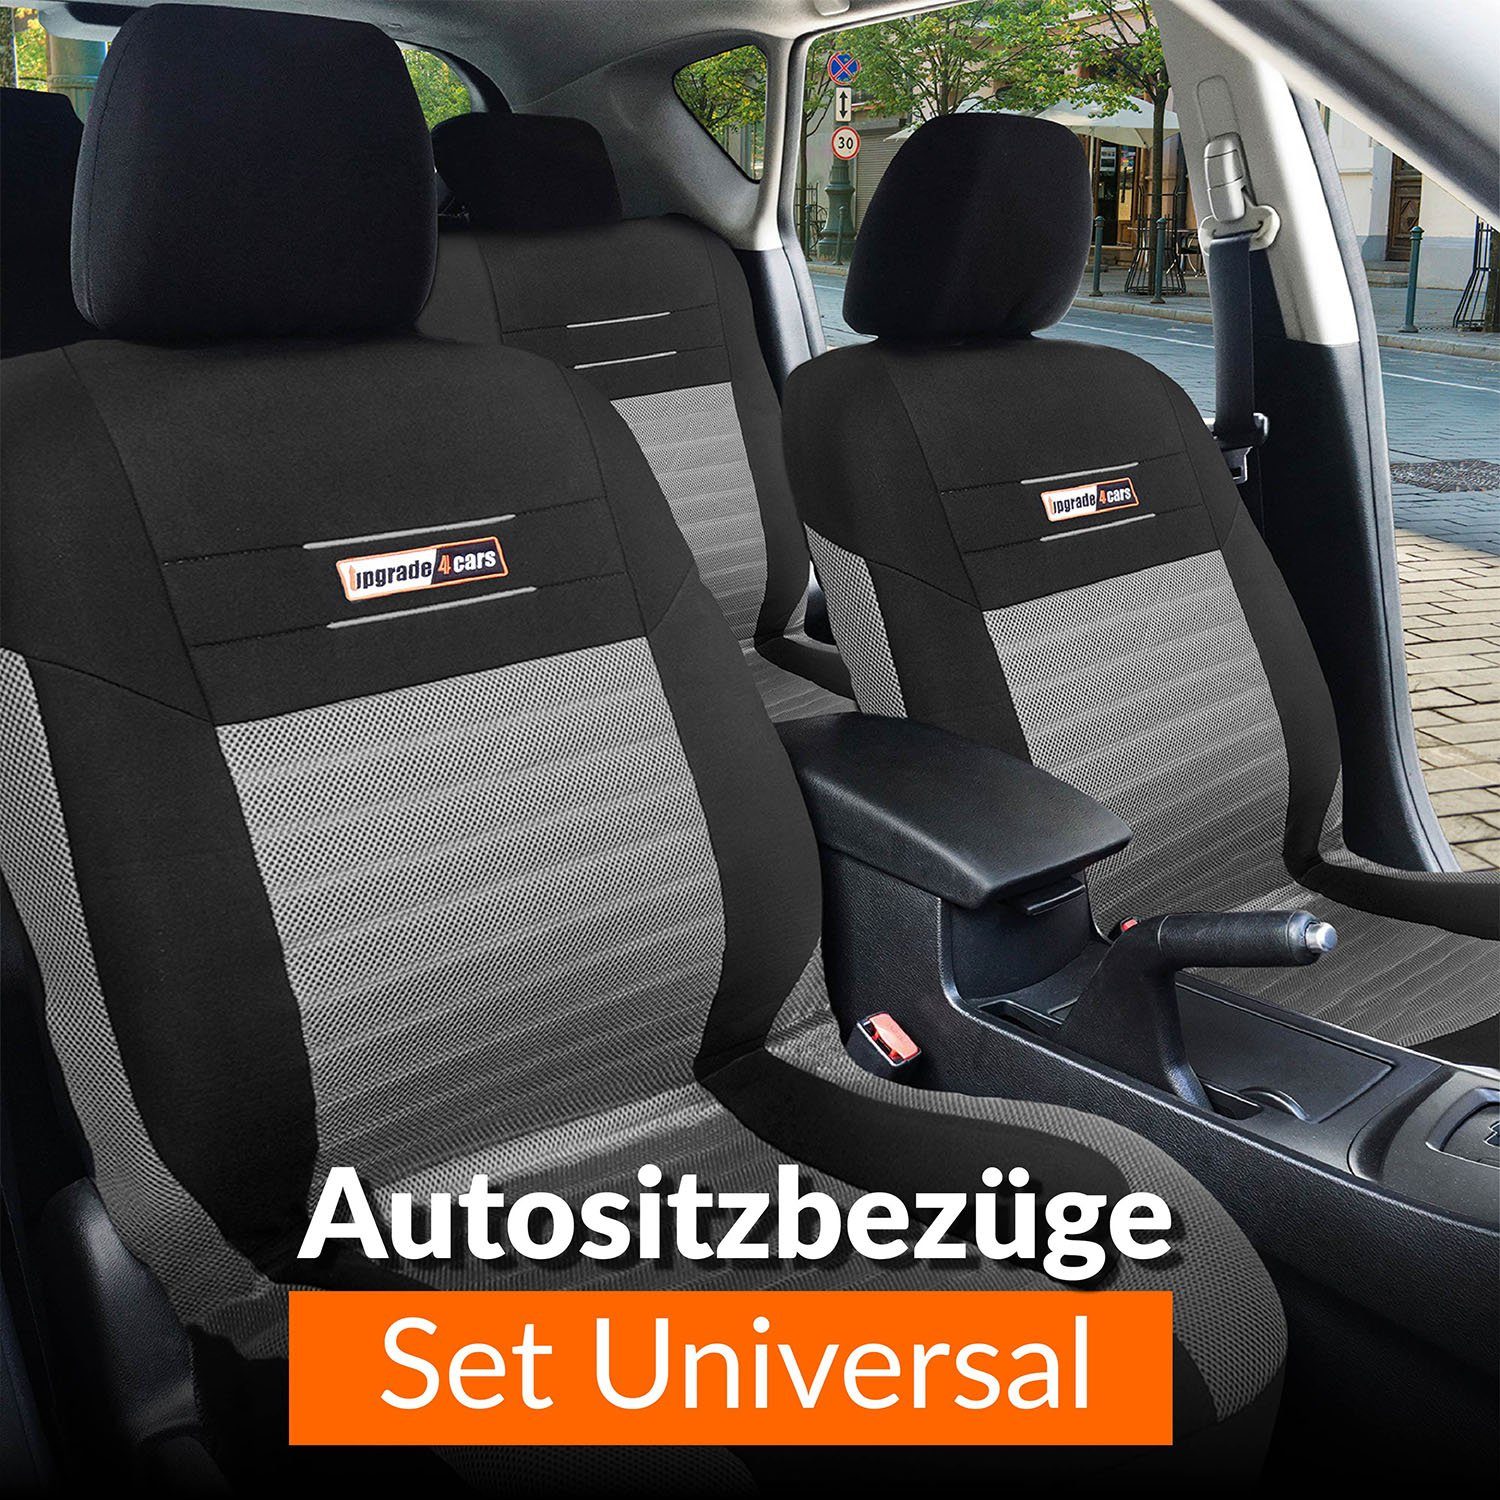 Upgrade4cars Autositzbezug Set Universal, Komplettset, 9-teilig